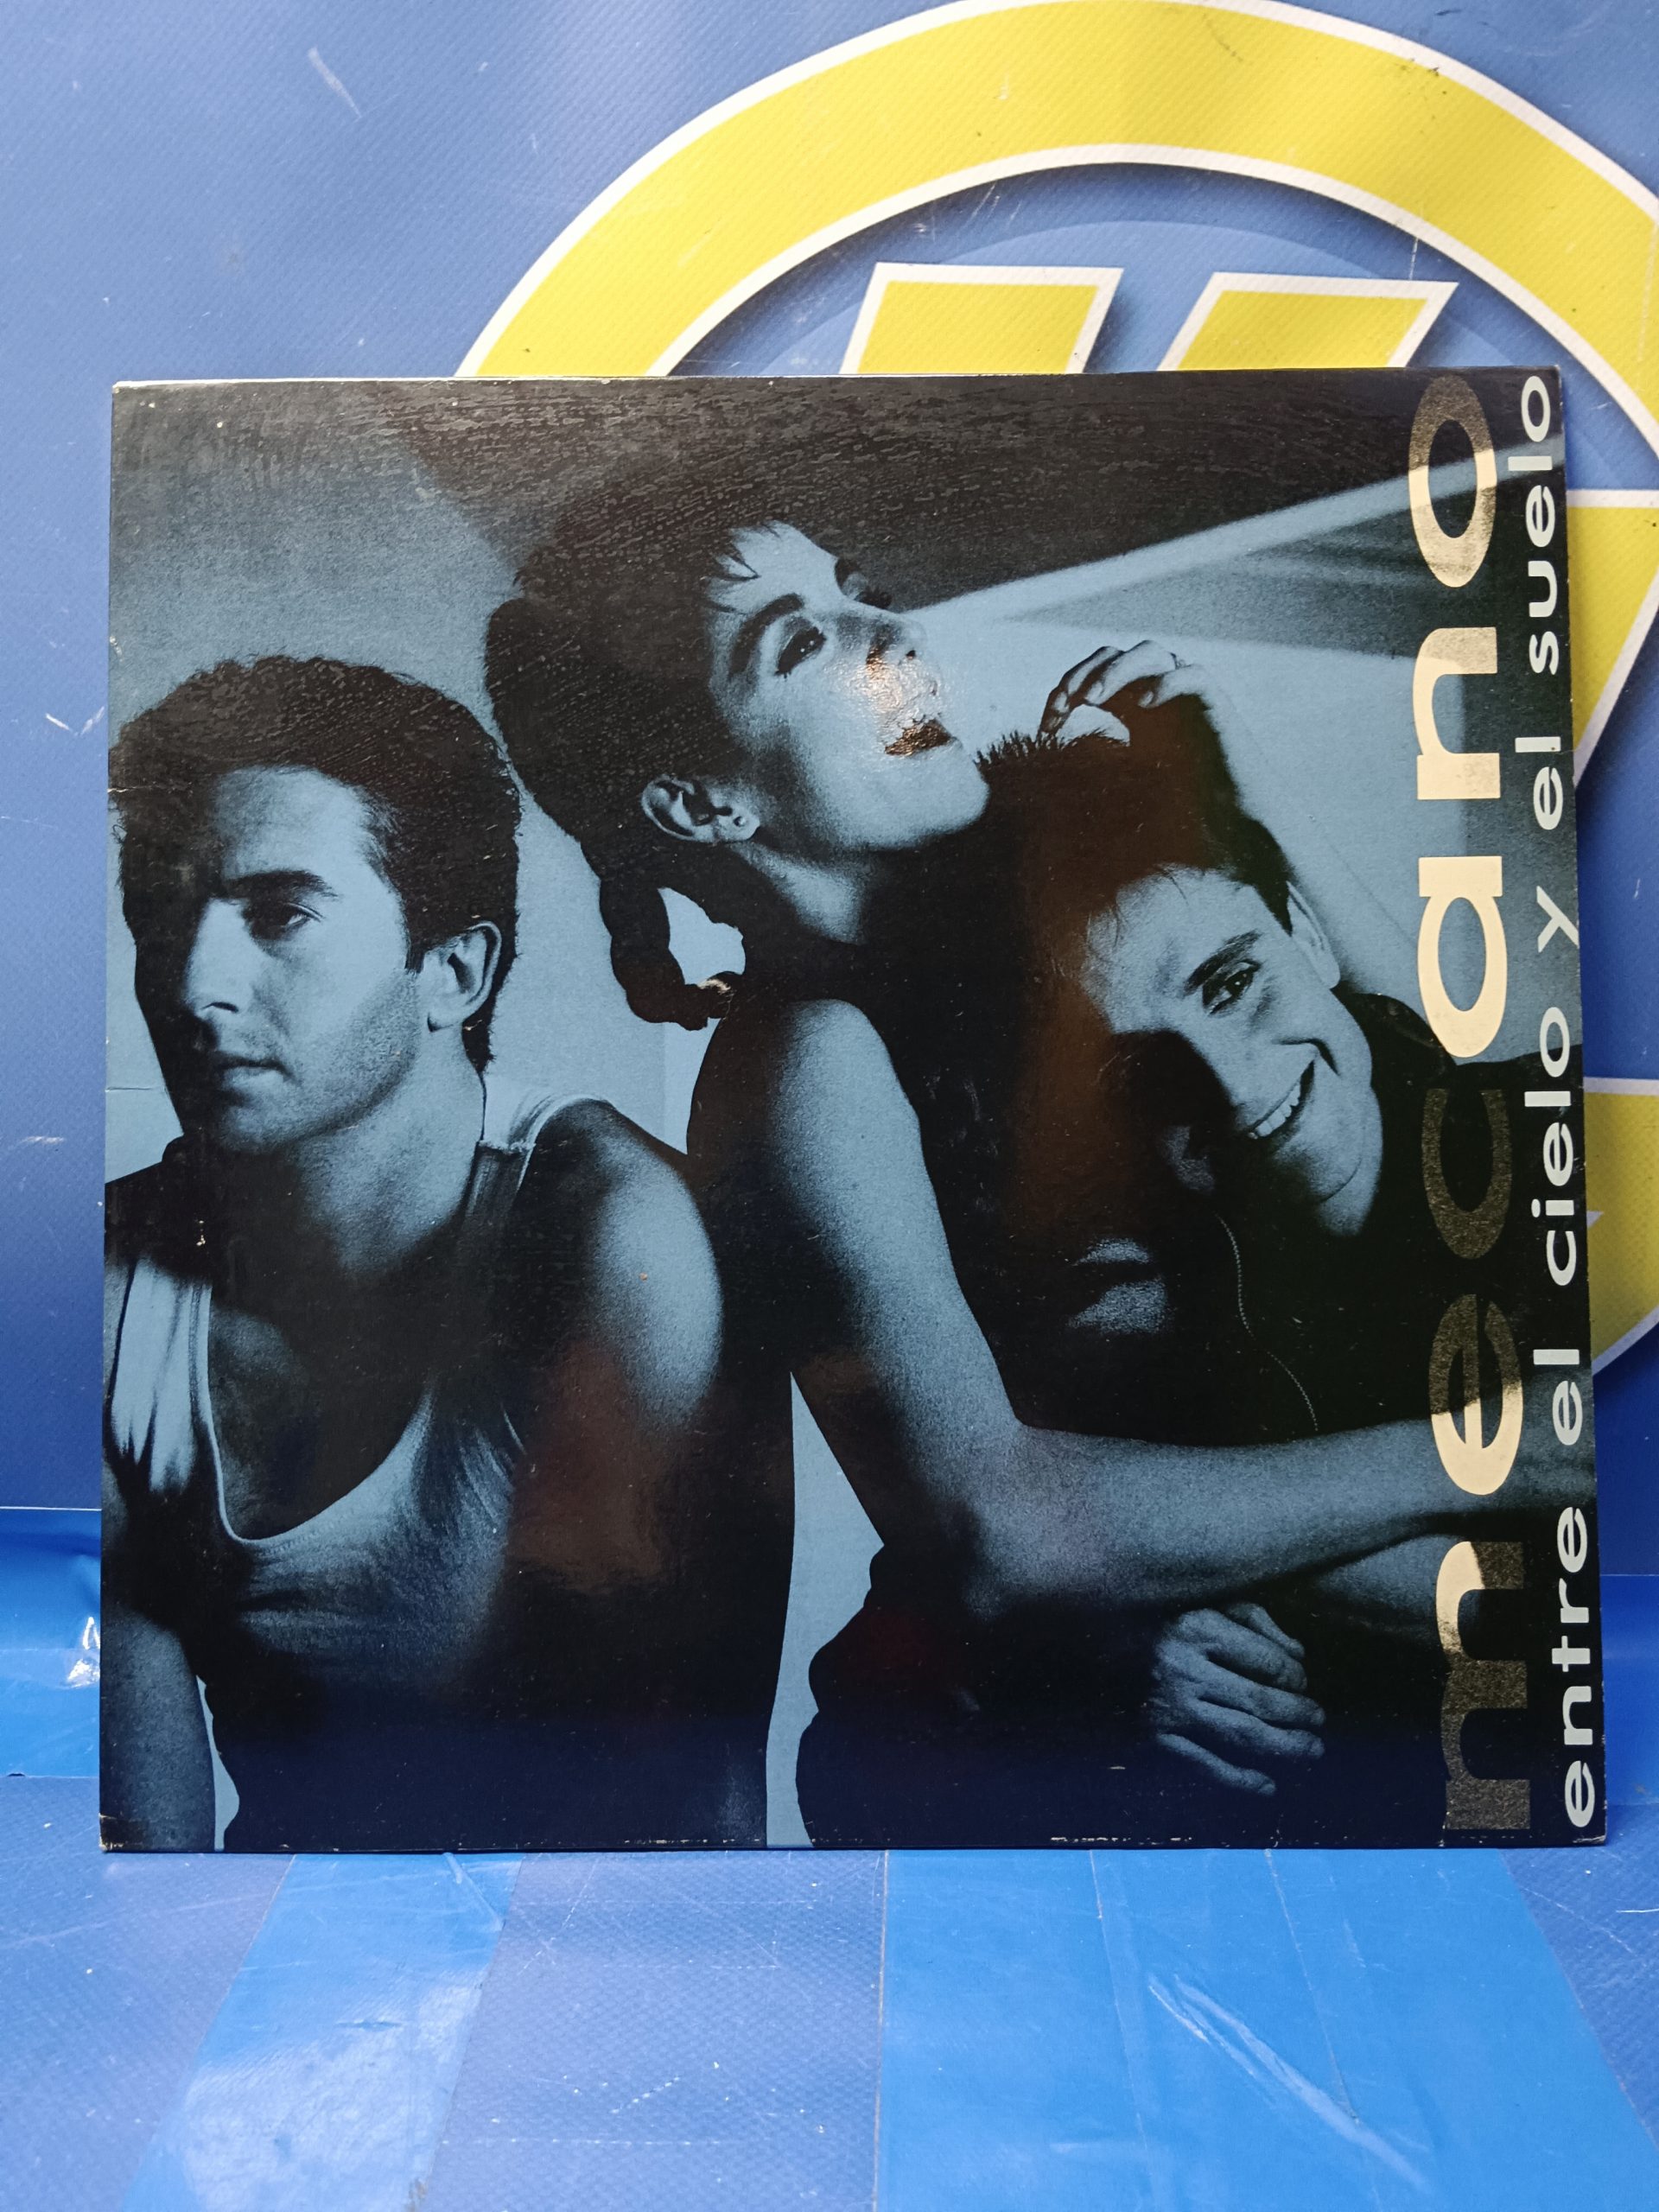 Disco, LP, vinilo, Mecano – Entre El Cielo Y El Suelo , 1987, spain -  VendeloAmazing